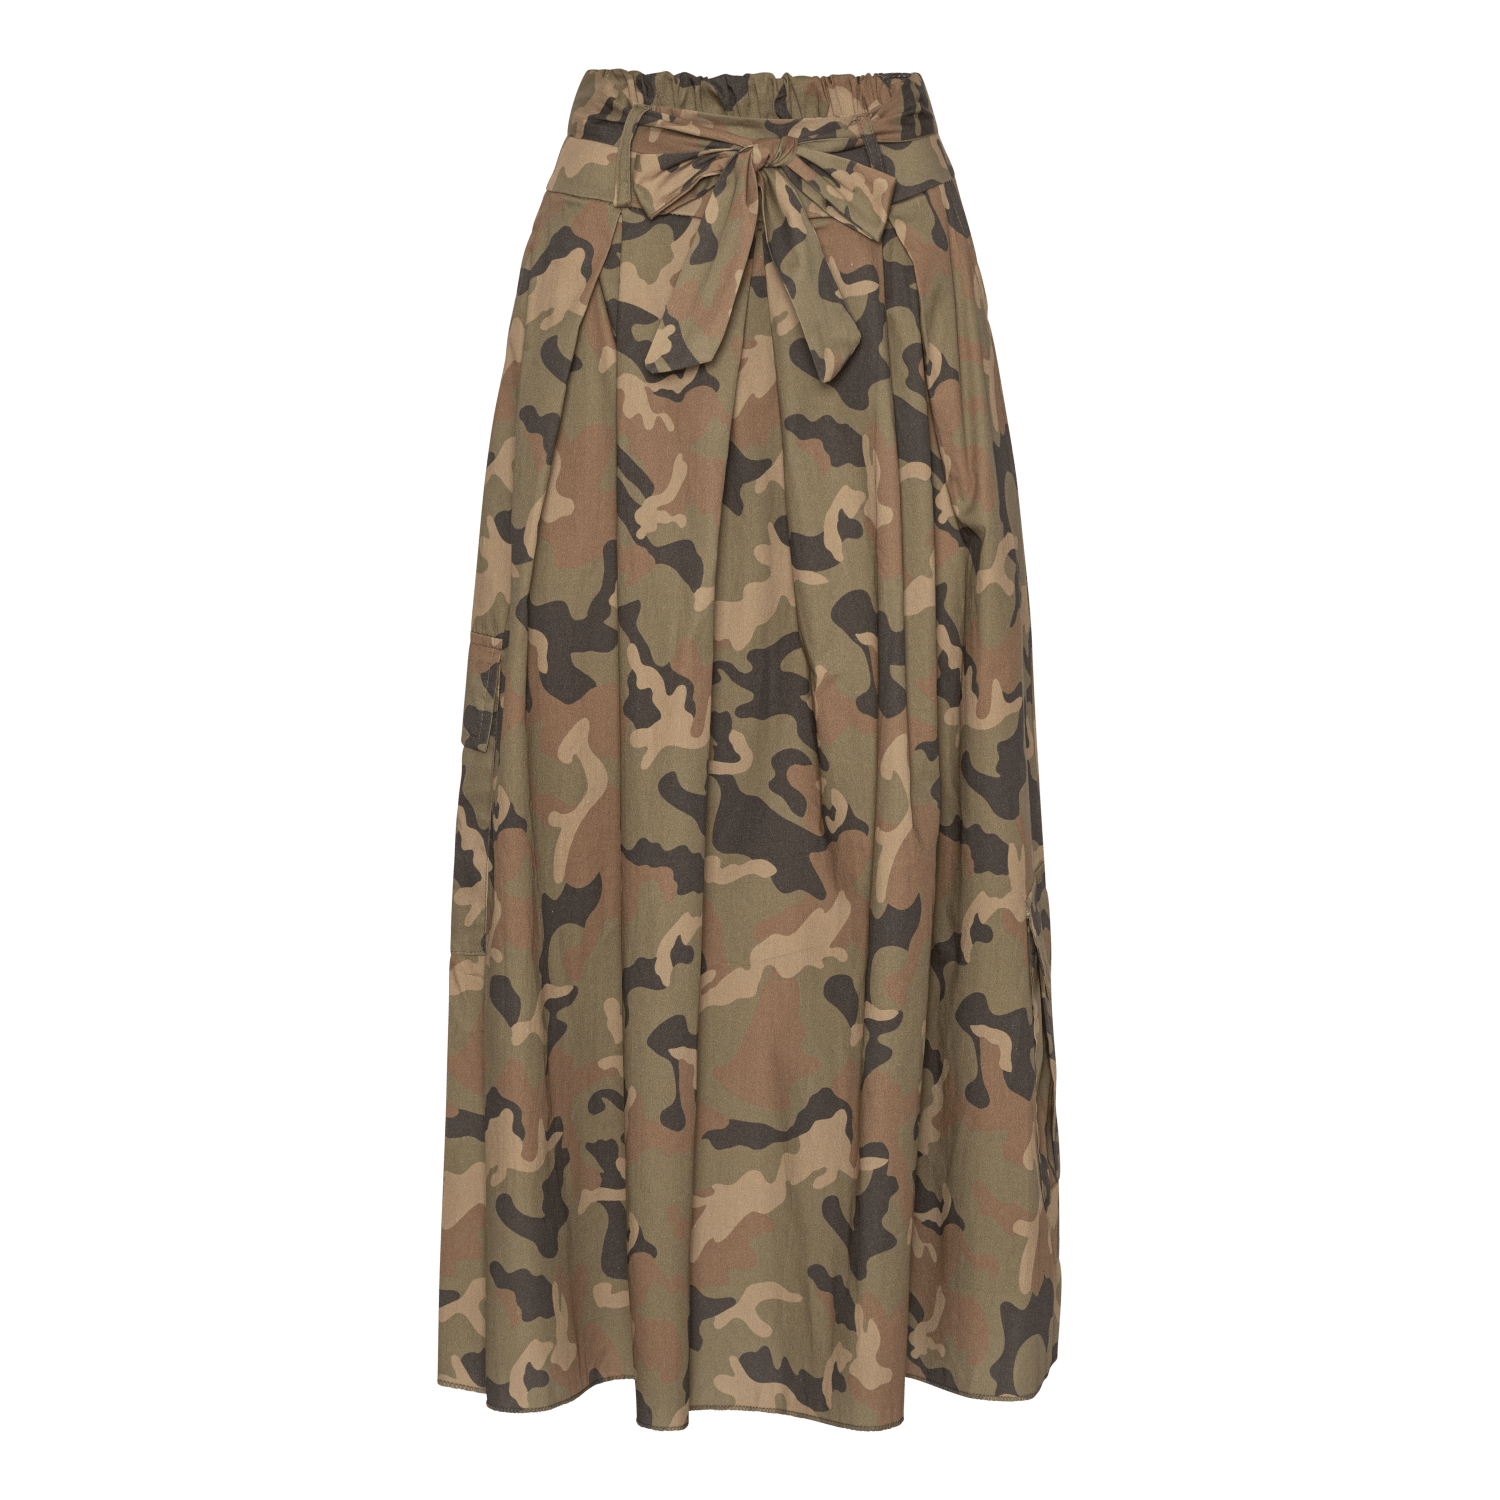 En fuldlængde, højtaljet nederdel i et klassisk camouflageprint med nuancer af grønt, brunt og sort. Nederdelen har en samlet talje med et bindebånd foran, som skaber bløde folder, der flyder ned langs beklædningsgenstanden.